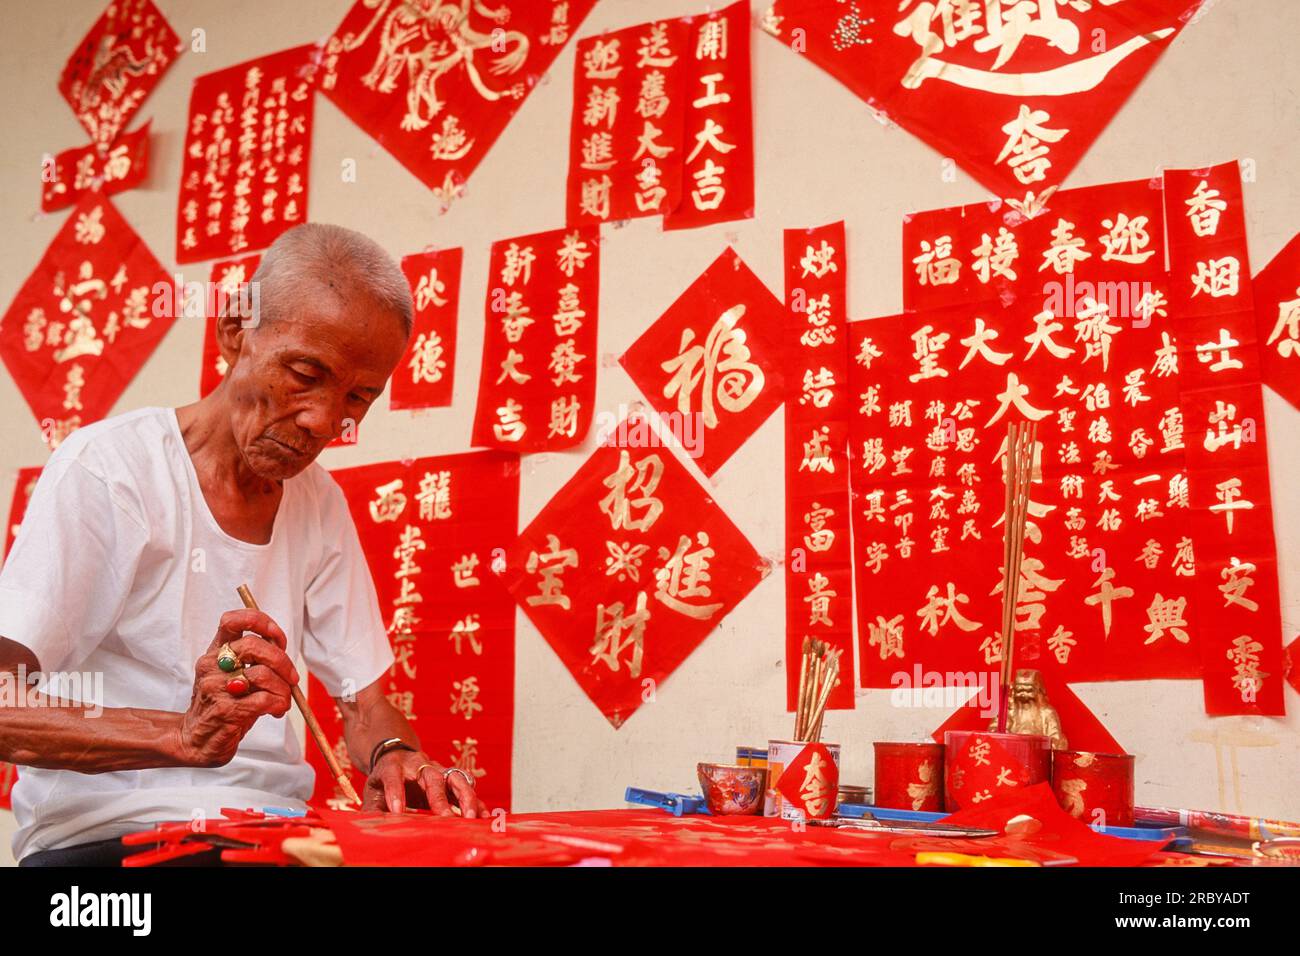 Chinese Calligrapher in Chinatown, Singapore Stock Photo